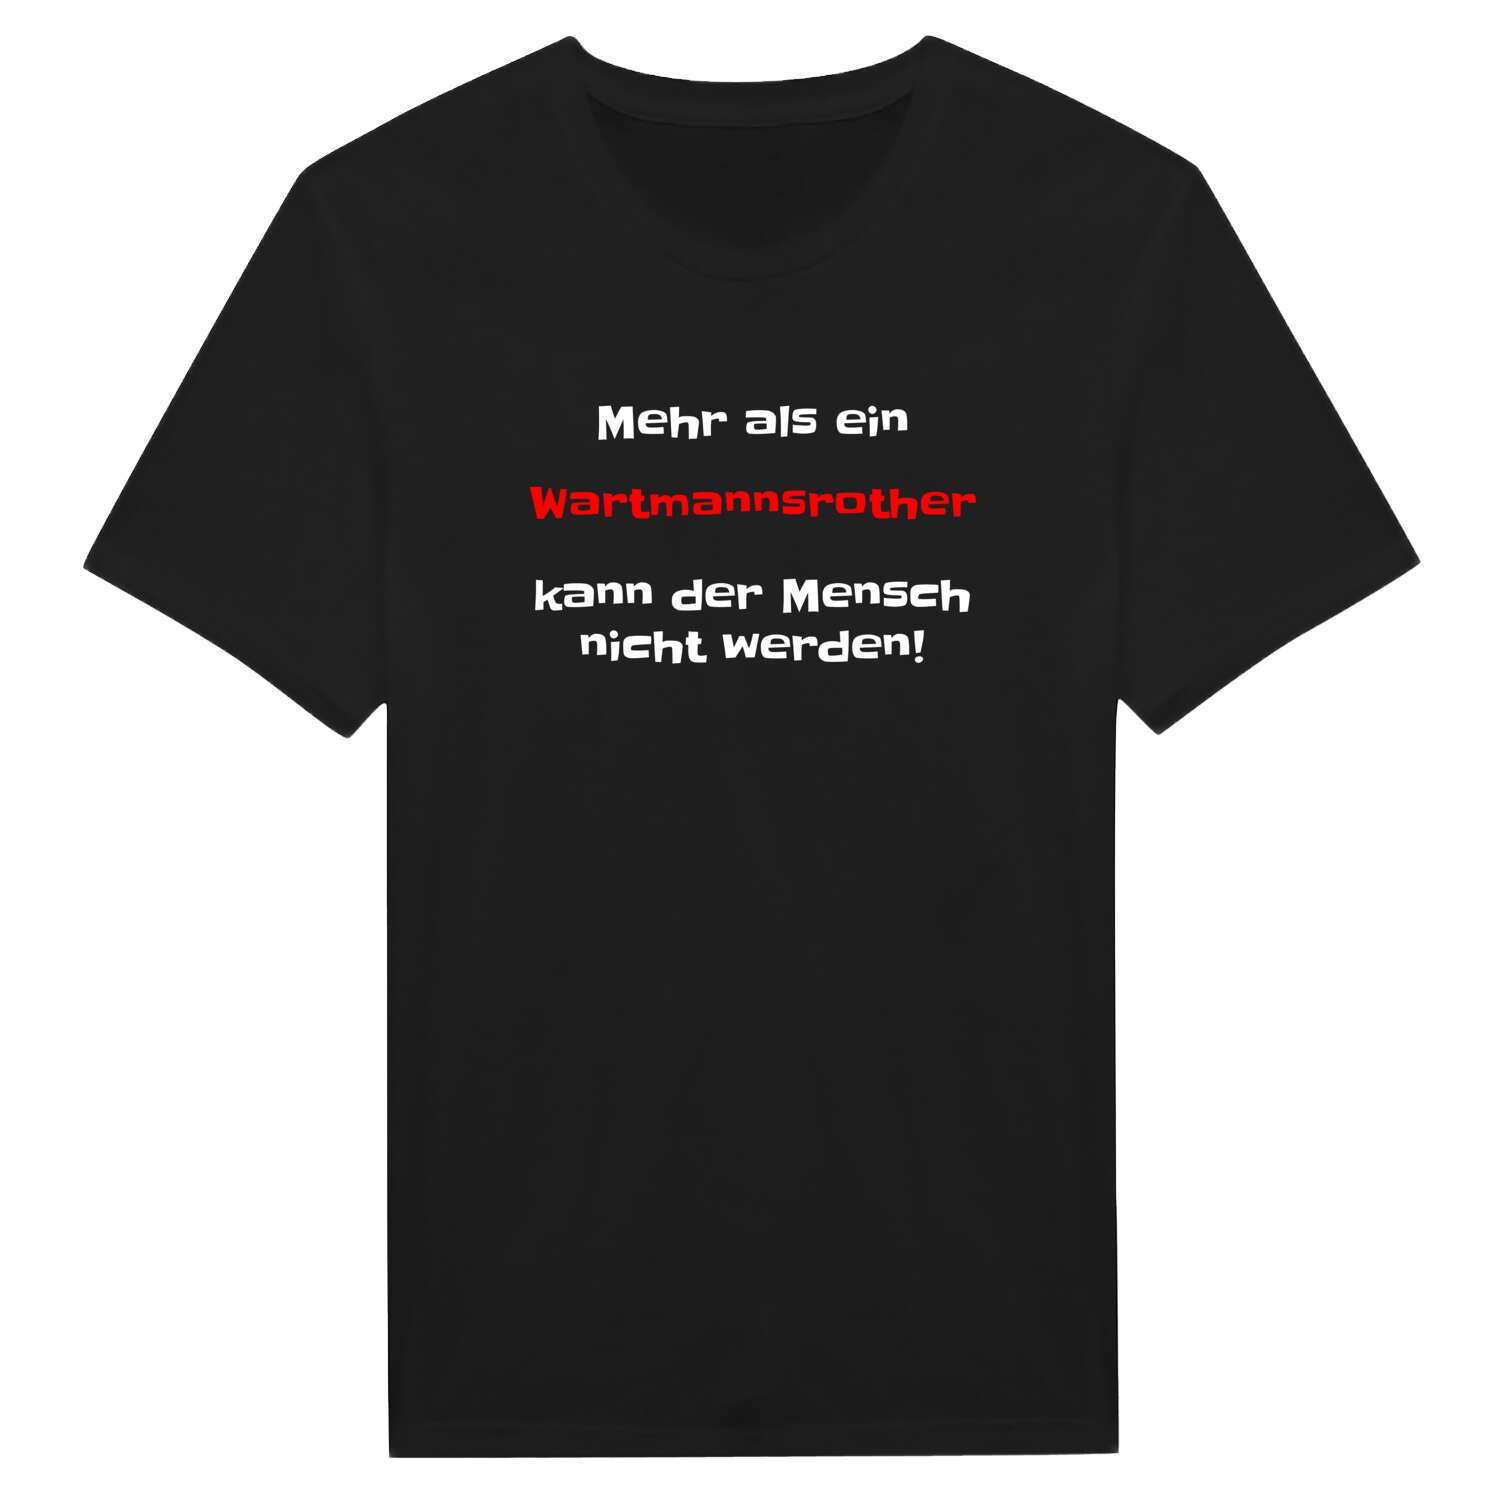 Wartmannsroth T-Shirt »Mehr als ein«